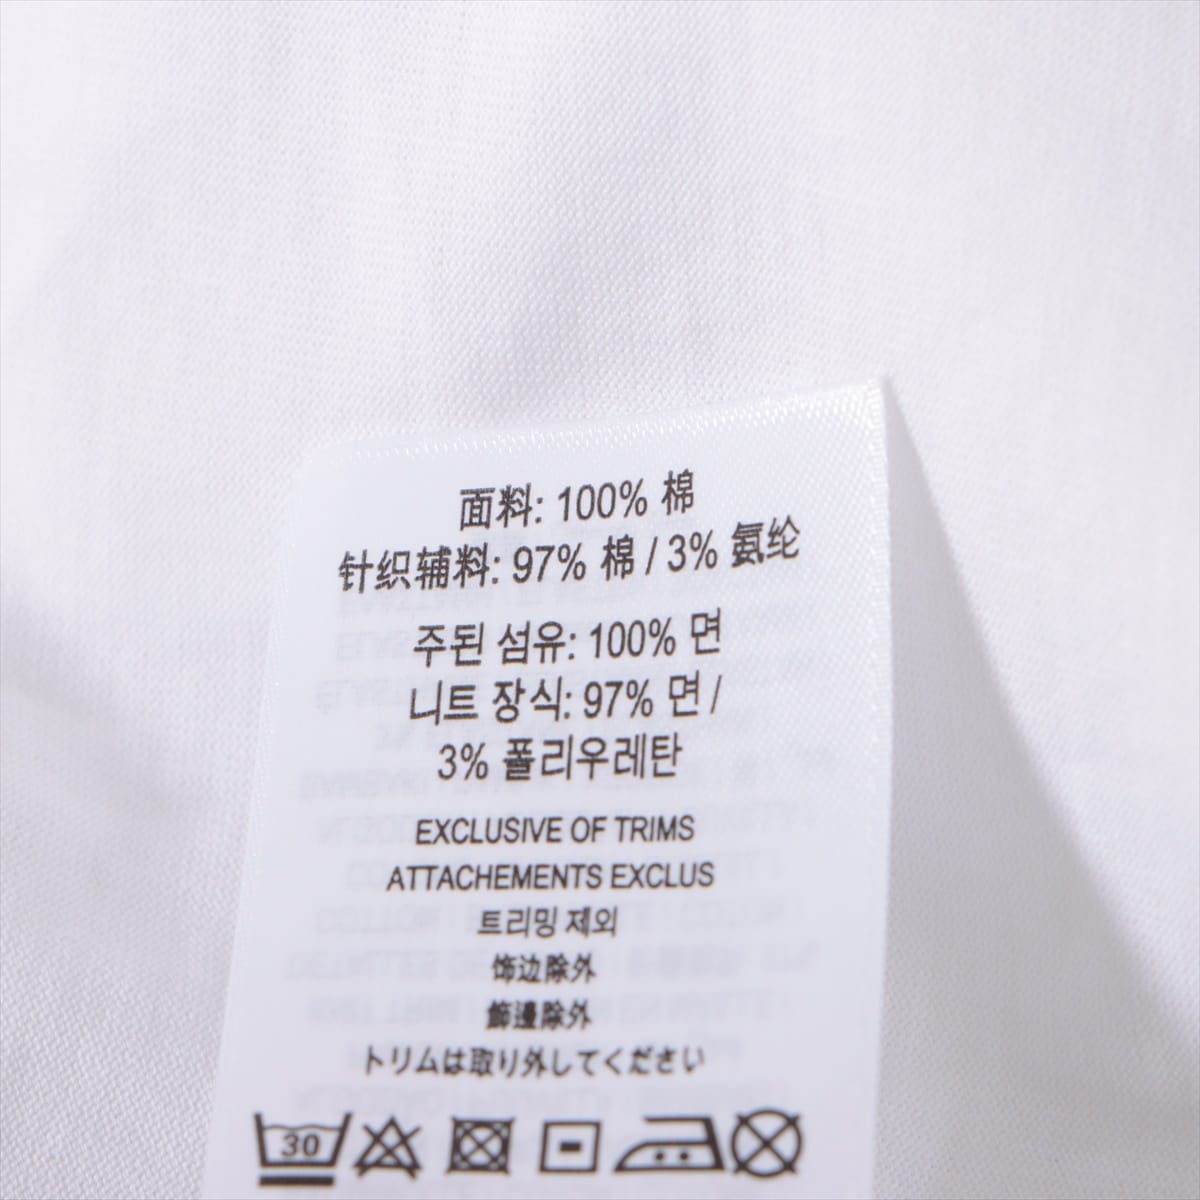 バーバリー ティッシ期 コットン Tシャツ L メンズ ホワイト  8009495 ロゴ